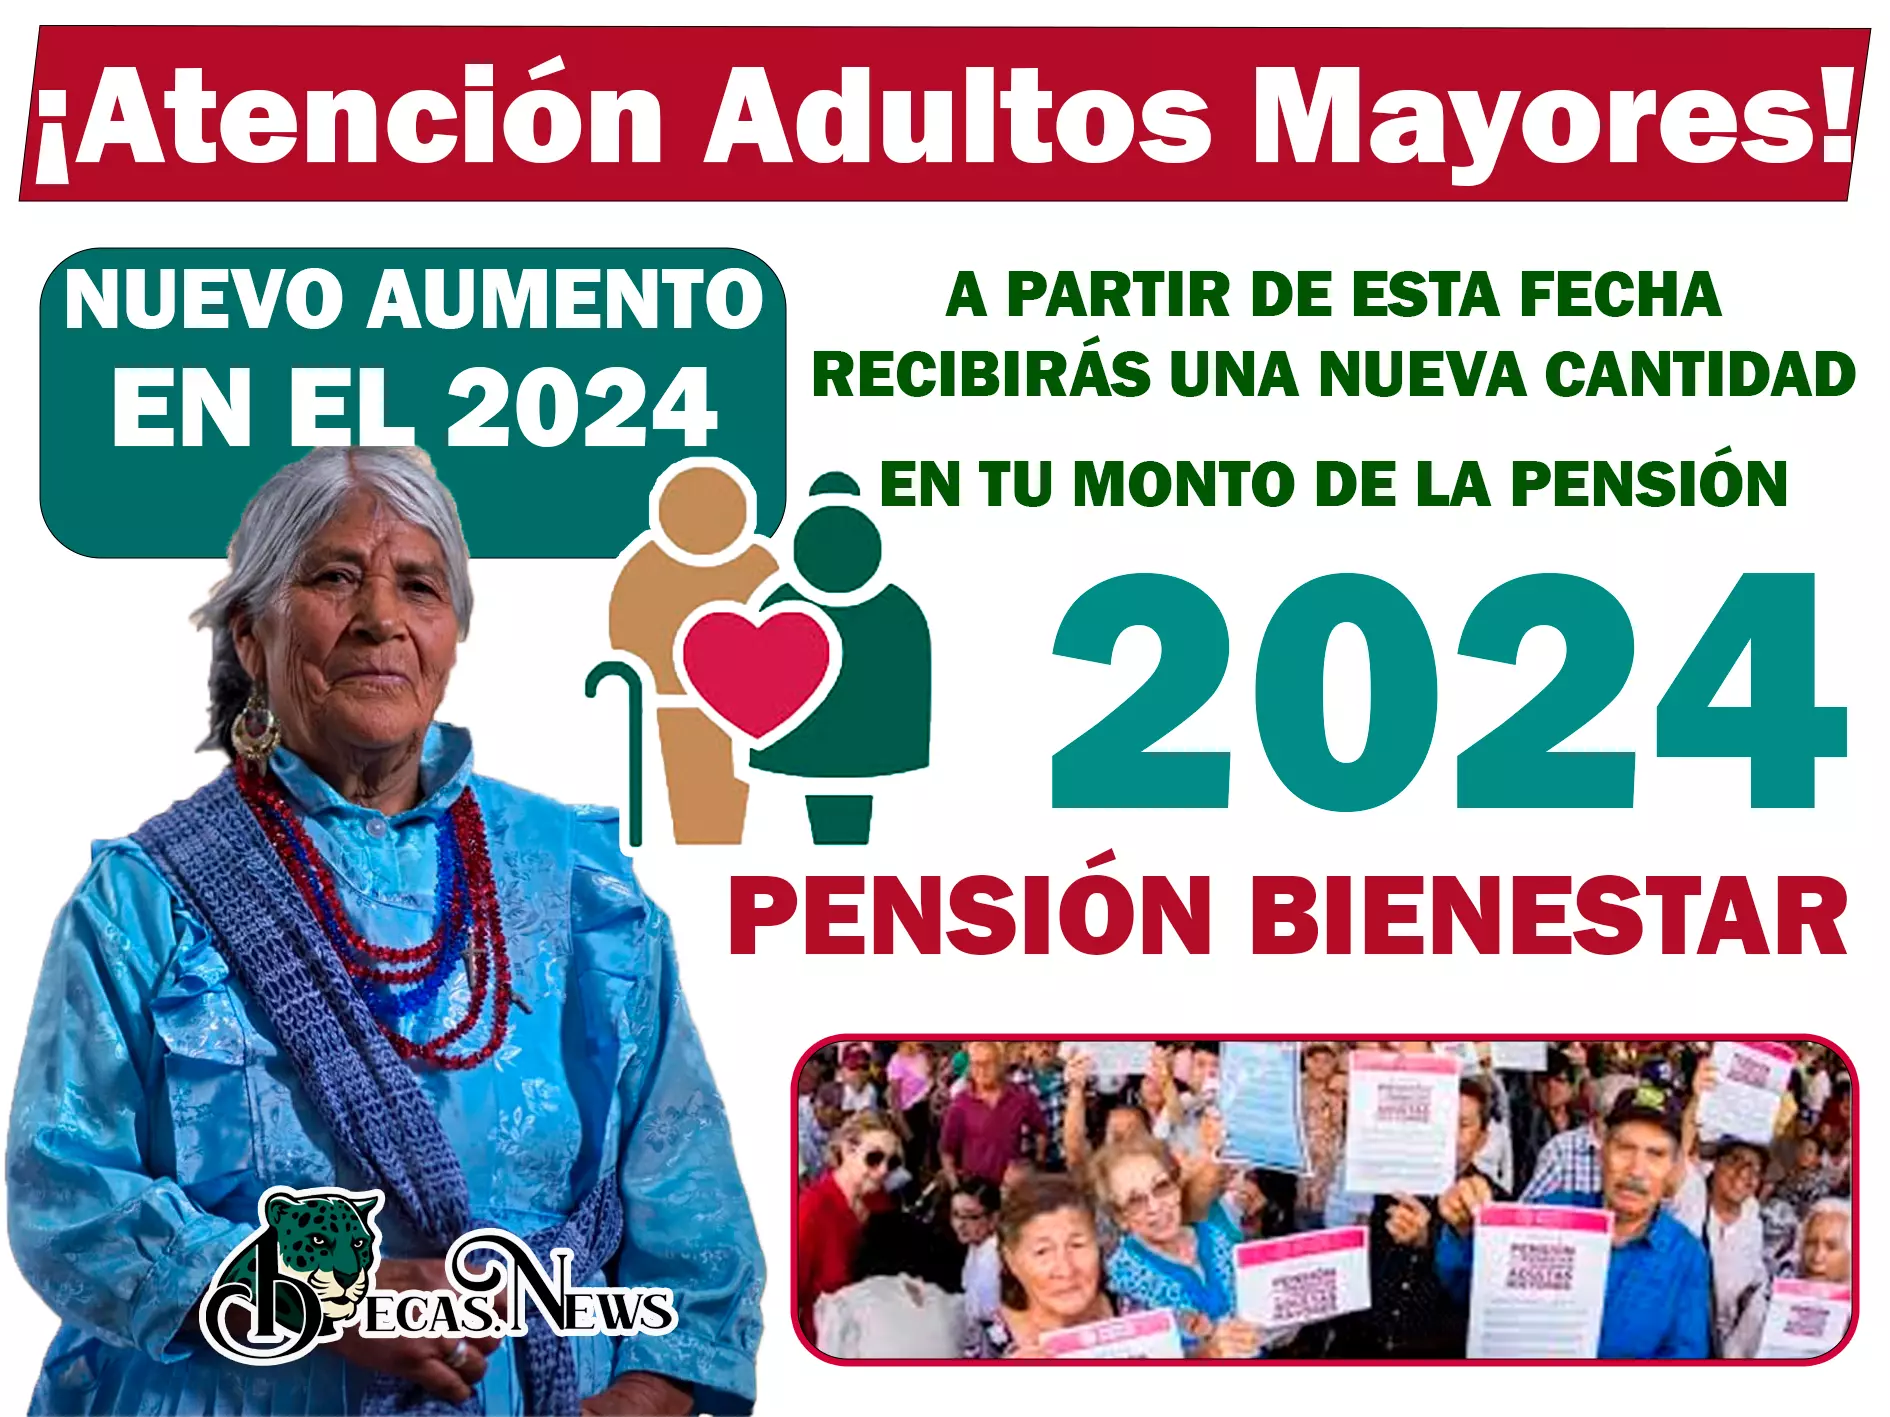 Conoce el nuevo aumento que verás reflejado en tu tarjeta del bienestar en el 2024: Pensión Bienestar